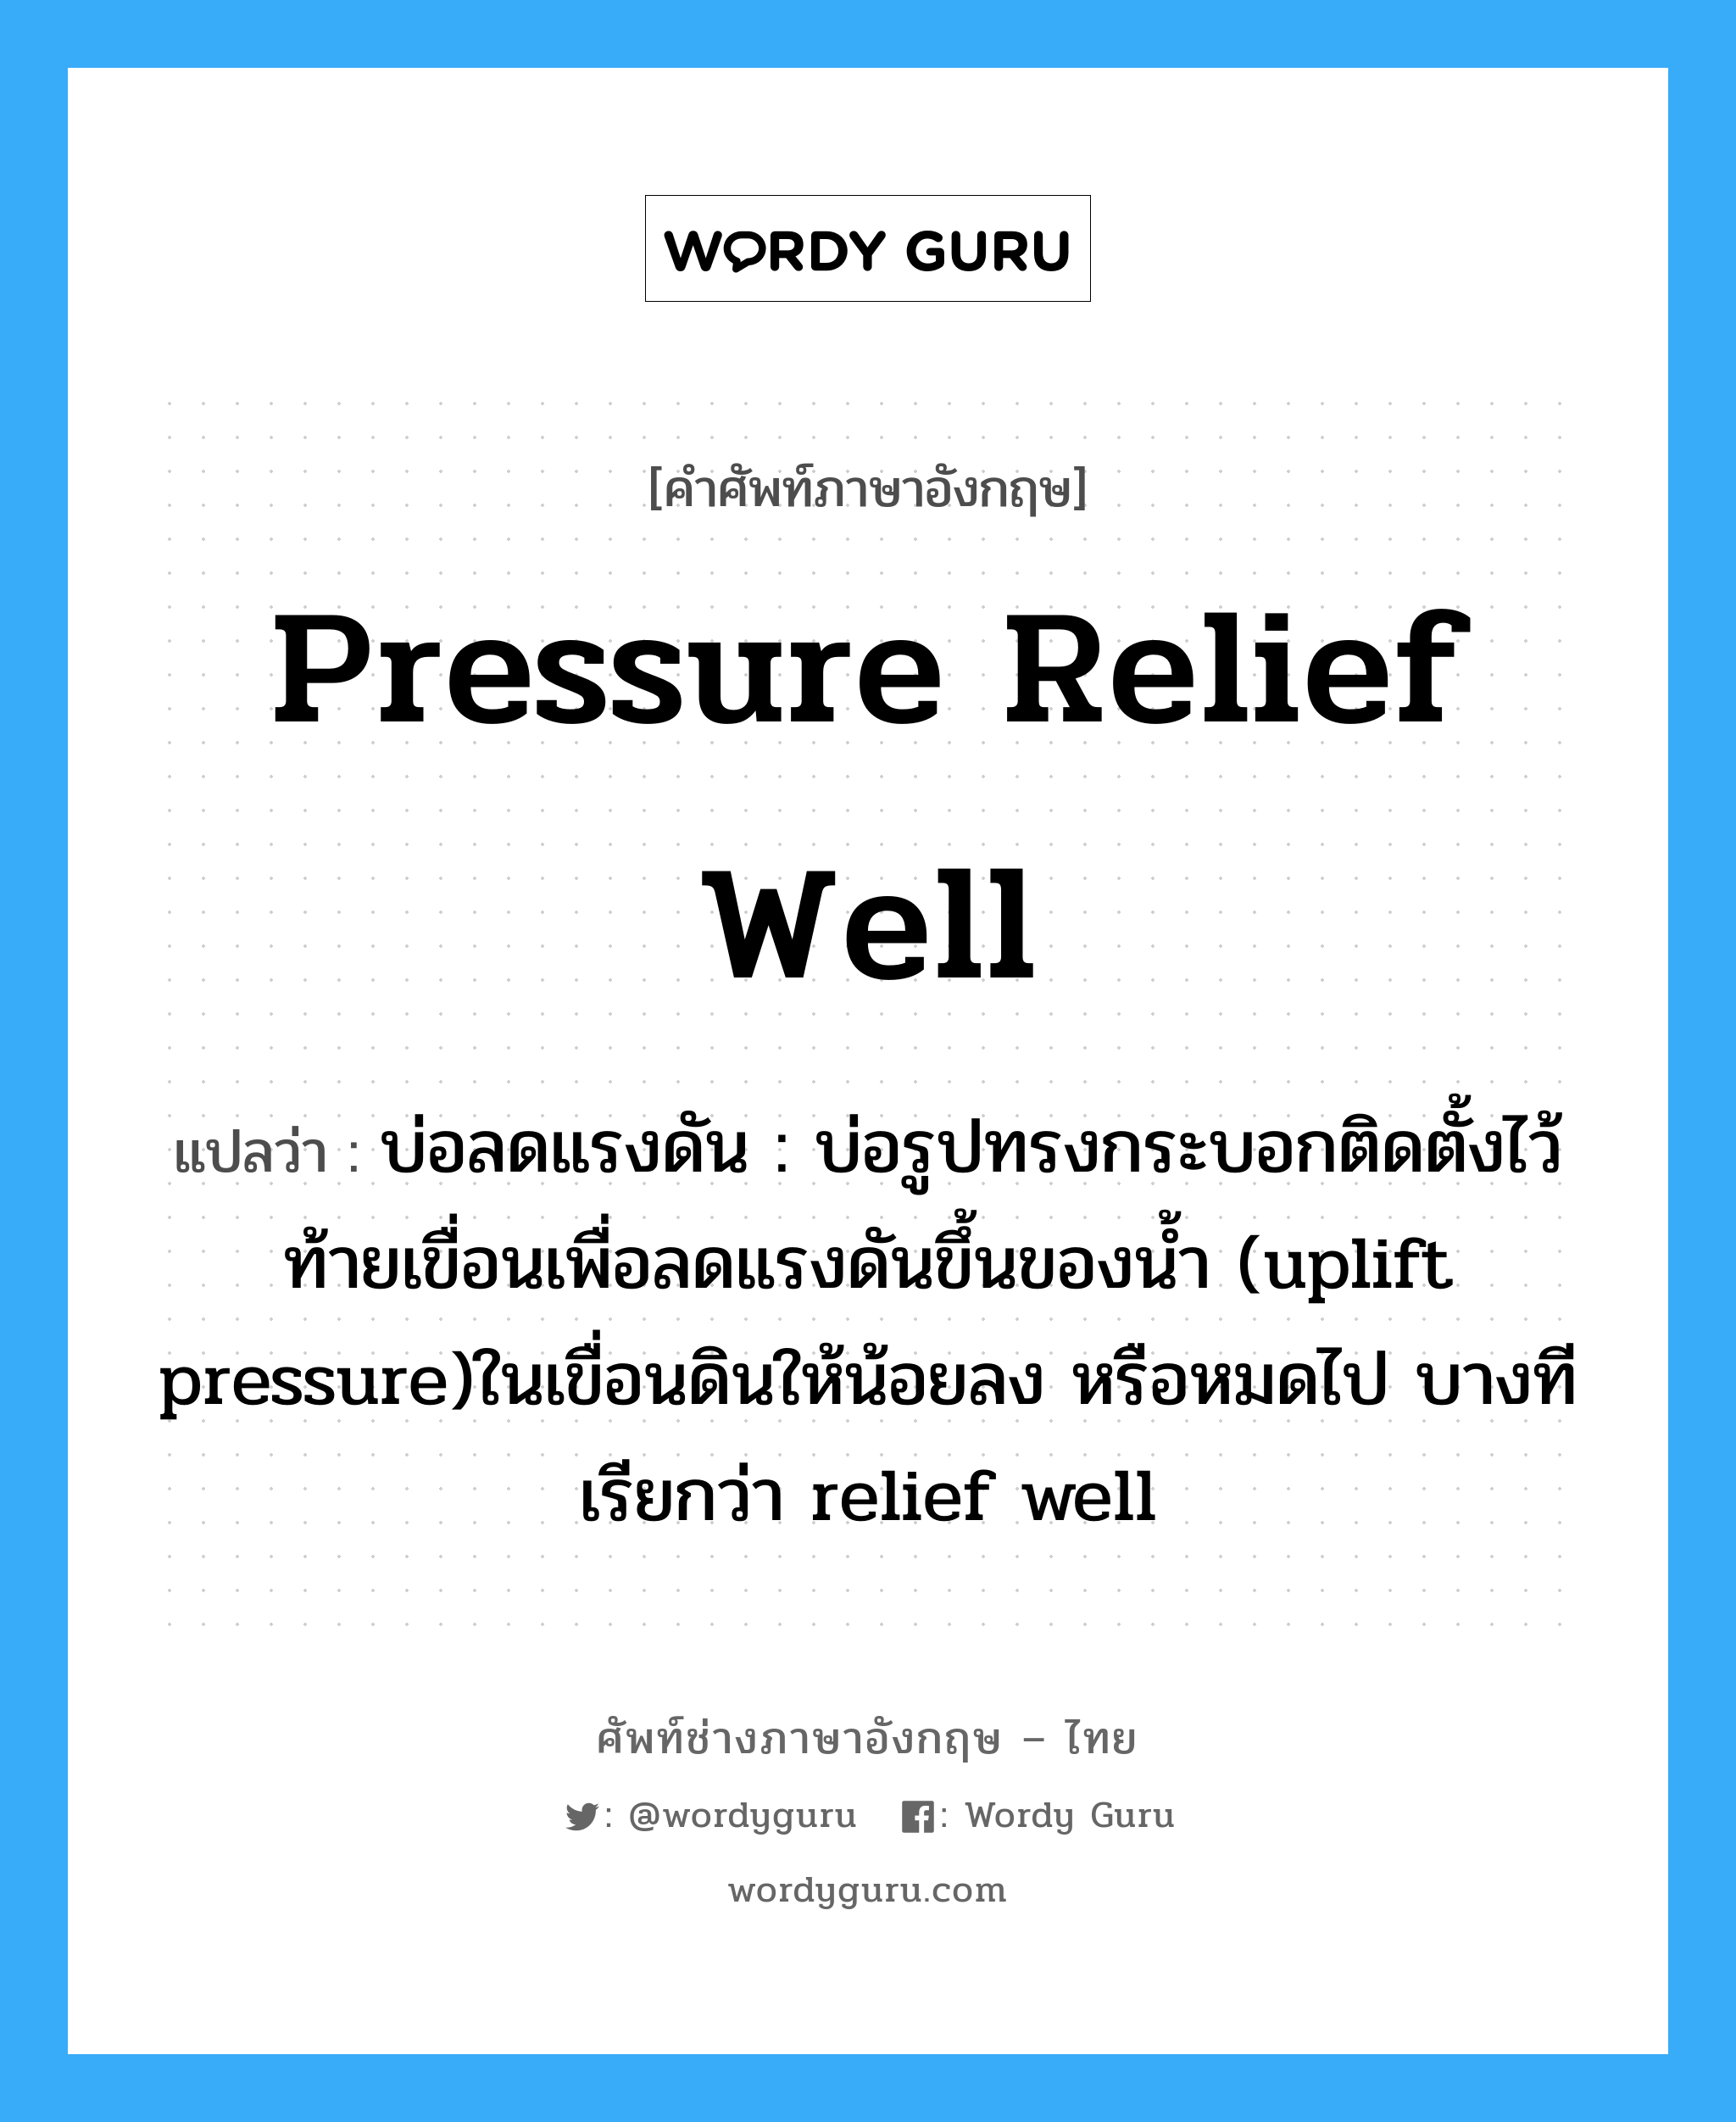 pressure relief well แปลว่า?, คำศัพท์ช่างภาษาอังกฤษ - ไทย pressure relief well คำศัพท์ภาษาอังกฤษ pressure relief well แปลว่า บ่อลดแรงดัน : บ่อรูปทรงกระบอกติดตั้งไว้ท้ายเขื่อนเพื่อลดแรงดันขึ้นของน้ำ (uplift pressure)ในเขื่อนดินให้น้อยลง หรือหมดไป บางทีเรียกว่า relief well